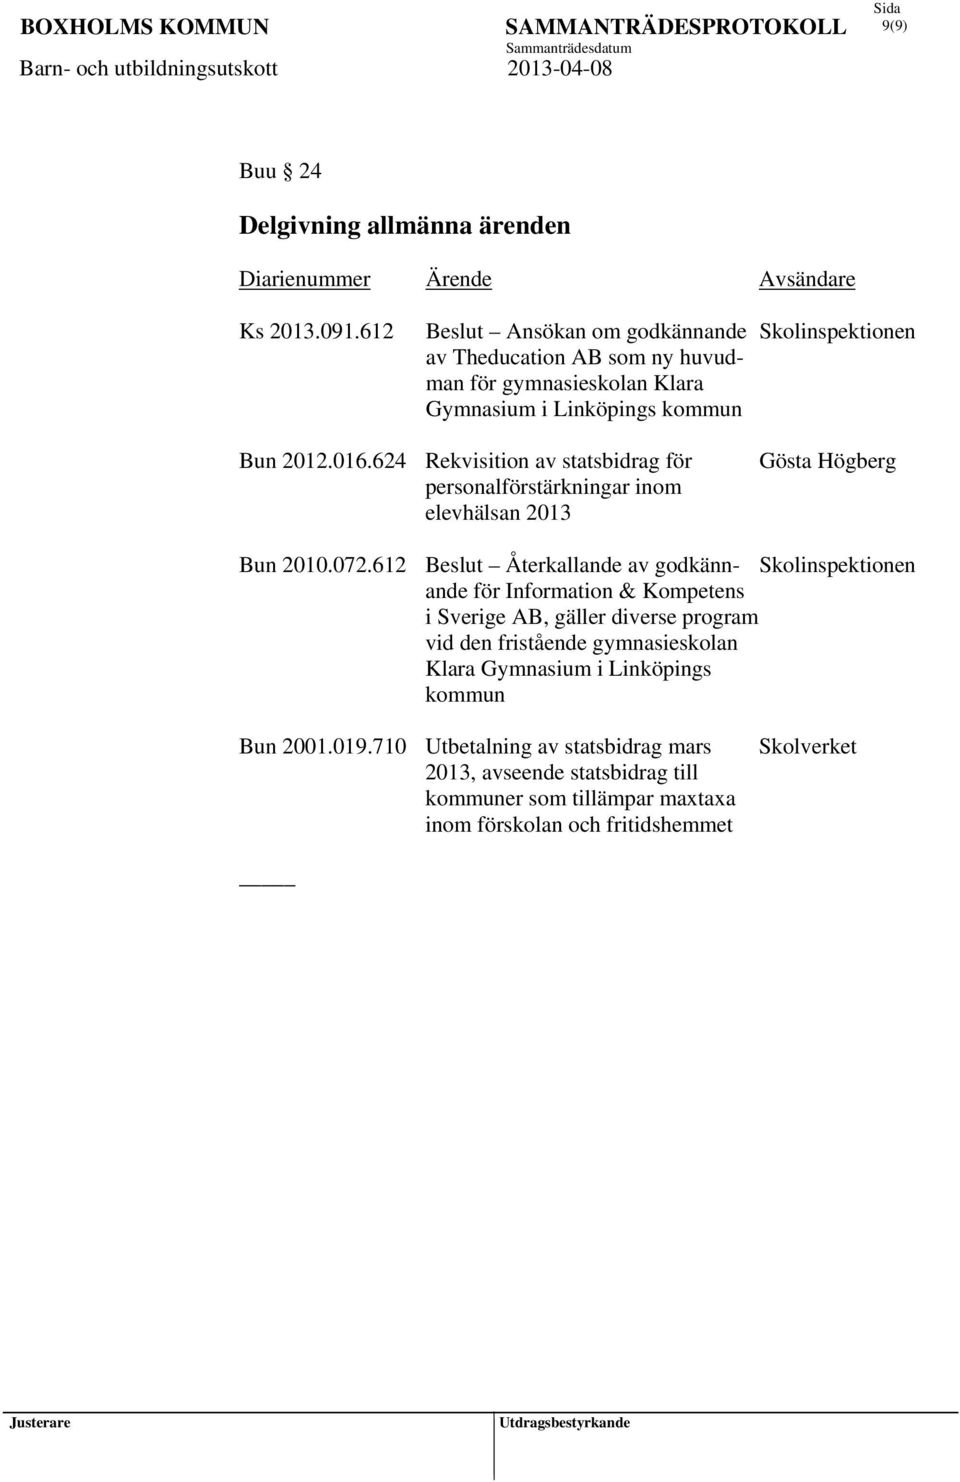 624 Rekvisition av statsbidrag för personalförstärkningar inom elevhälsan 2013 Gösta Högberg Bun 2010.072.